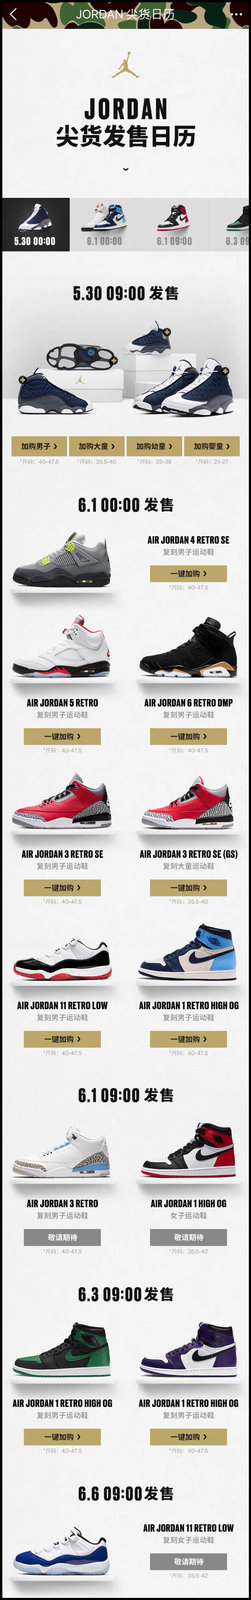 Nike,Jordan,AJ1,Dunk,发售  黑曜石、丝绸黑脚趾 AJ1 下周一补货！入手链接在此！